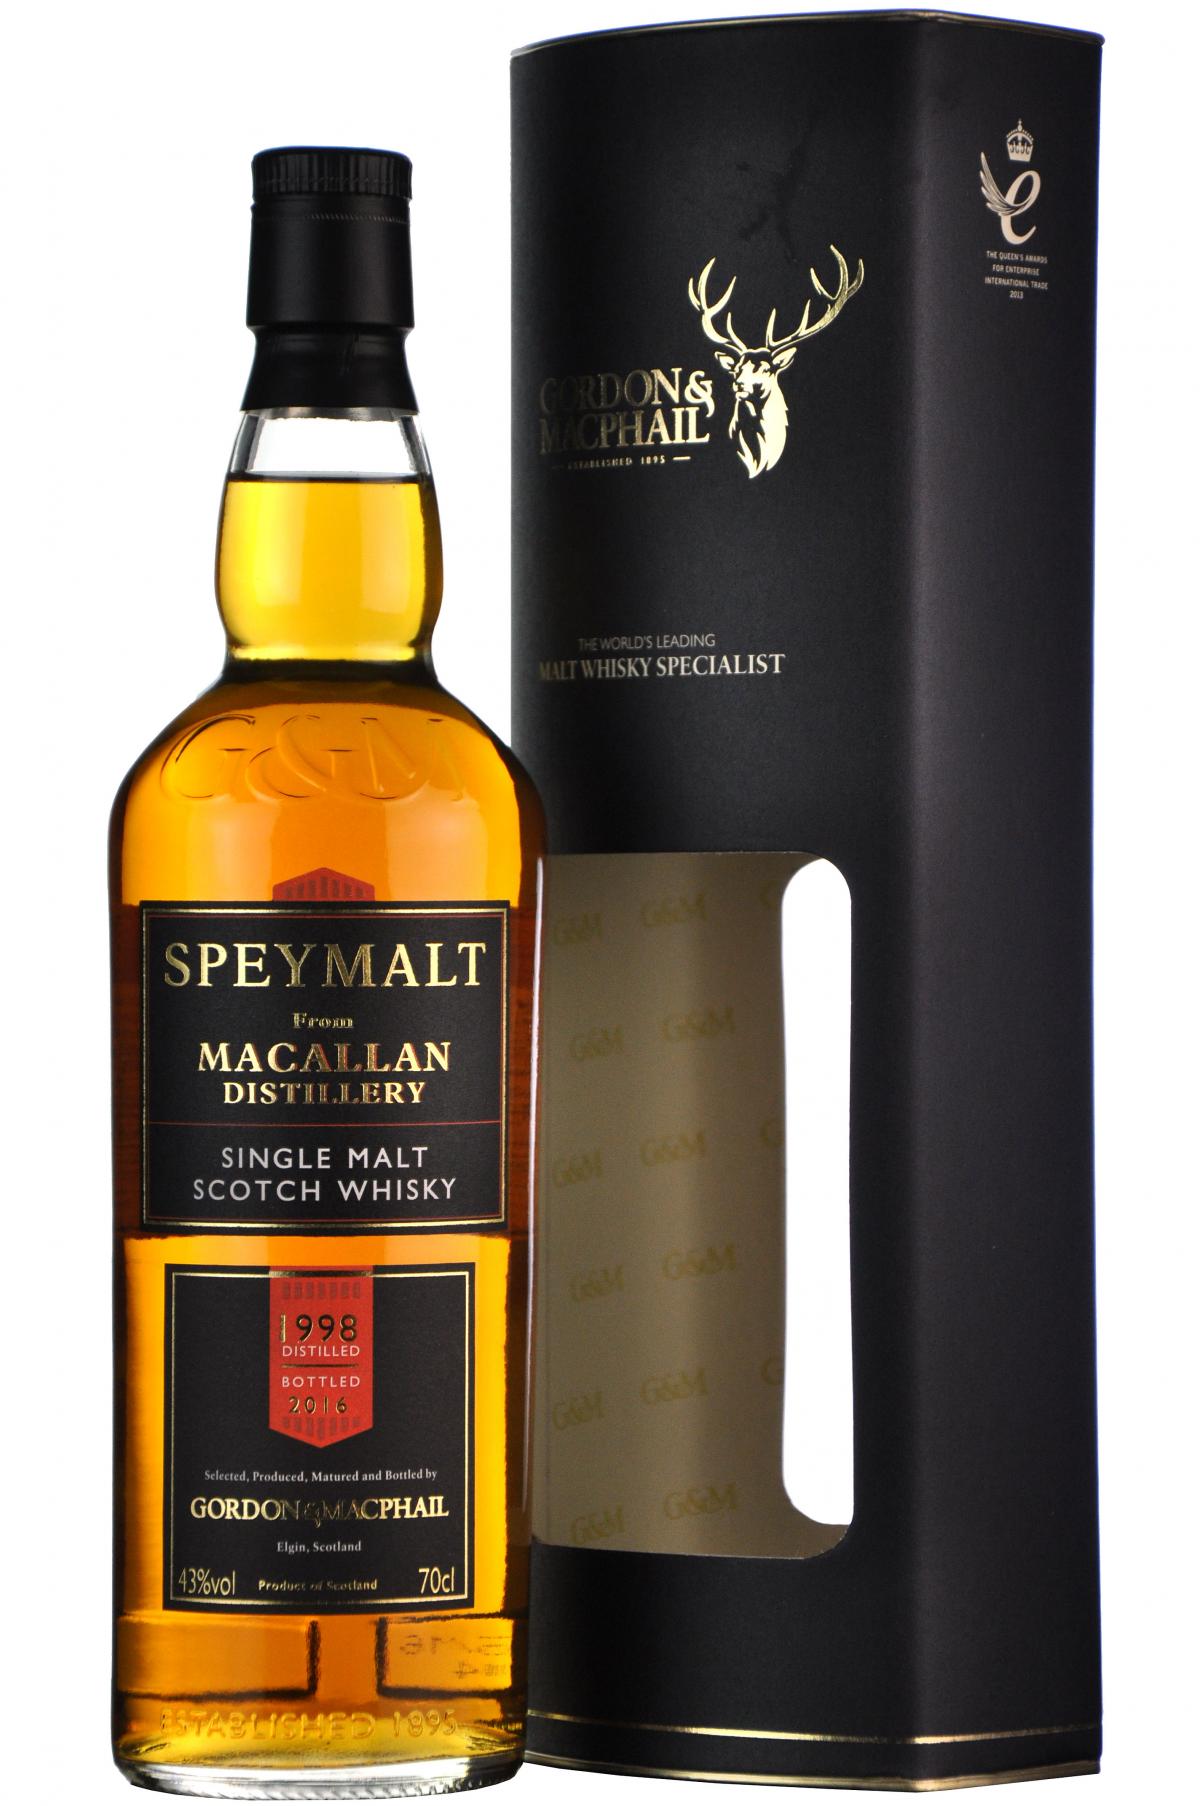 macallan 1998 speymalt, gordon and macphail speyside single malt scotch whisky whiskey